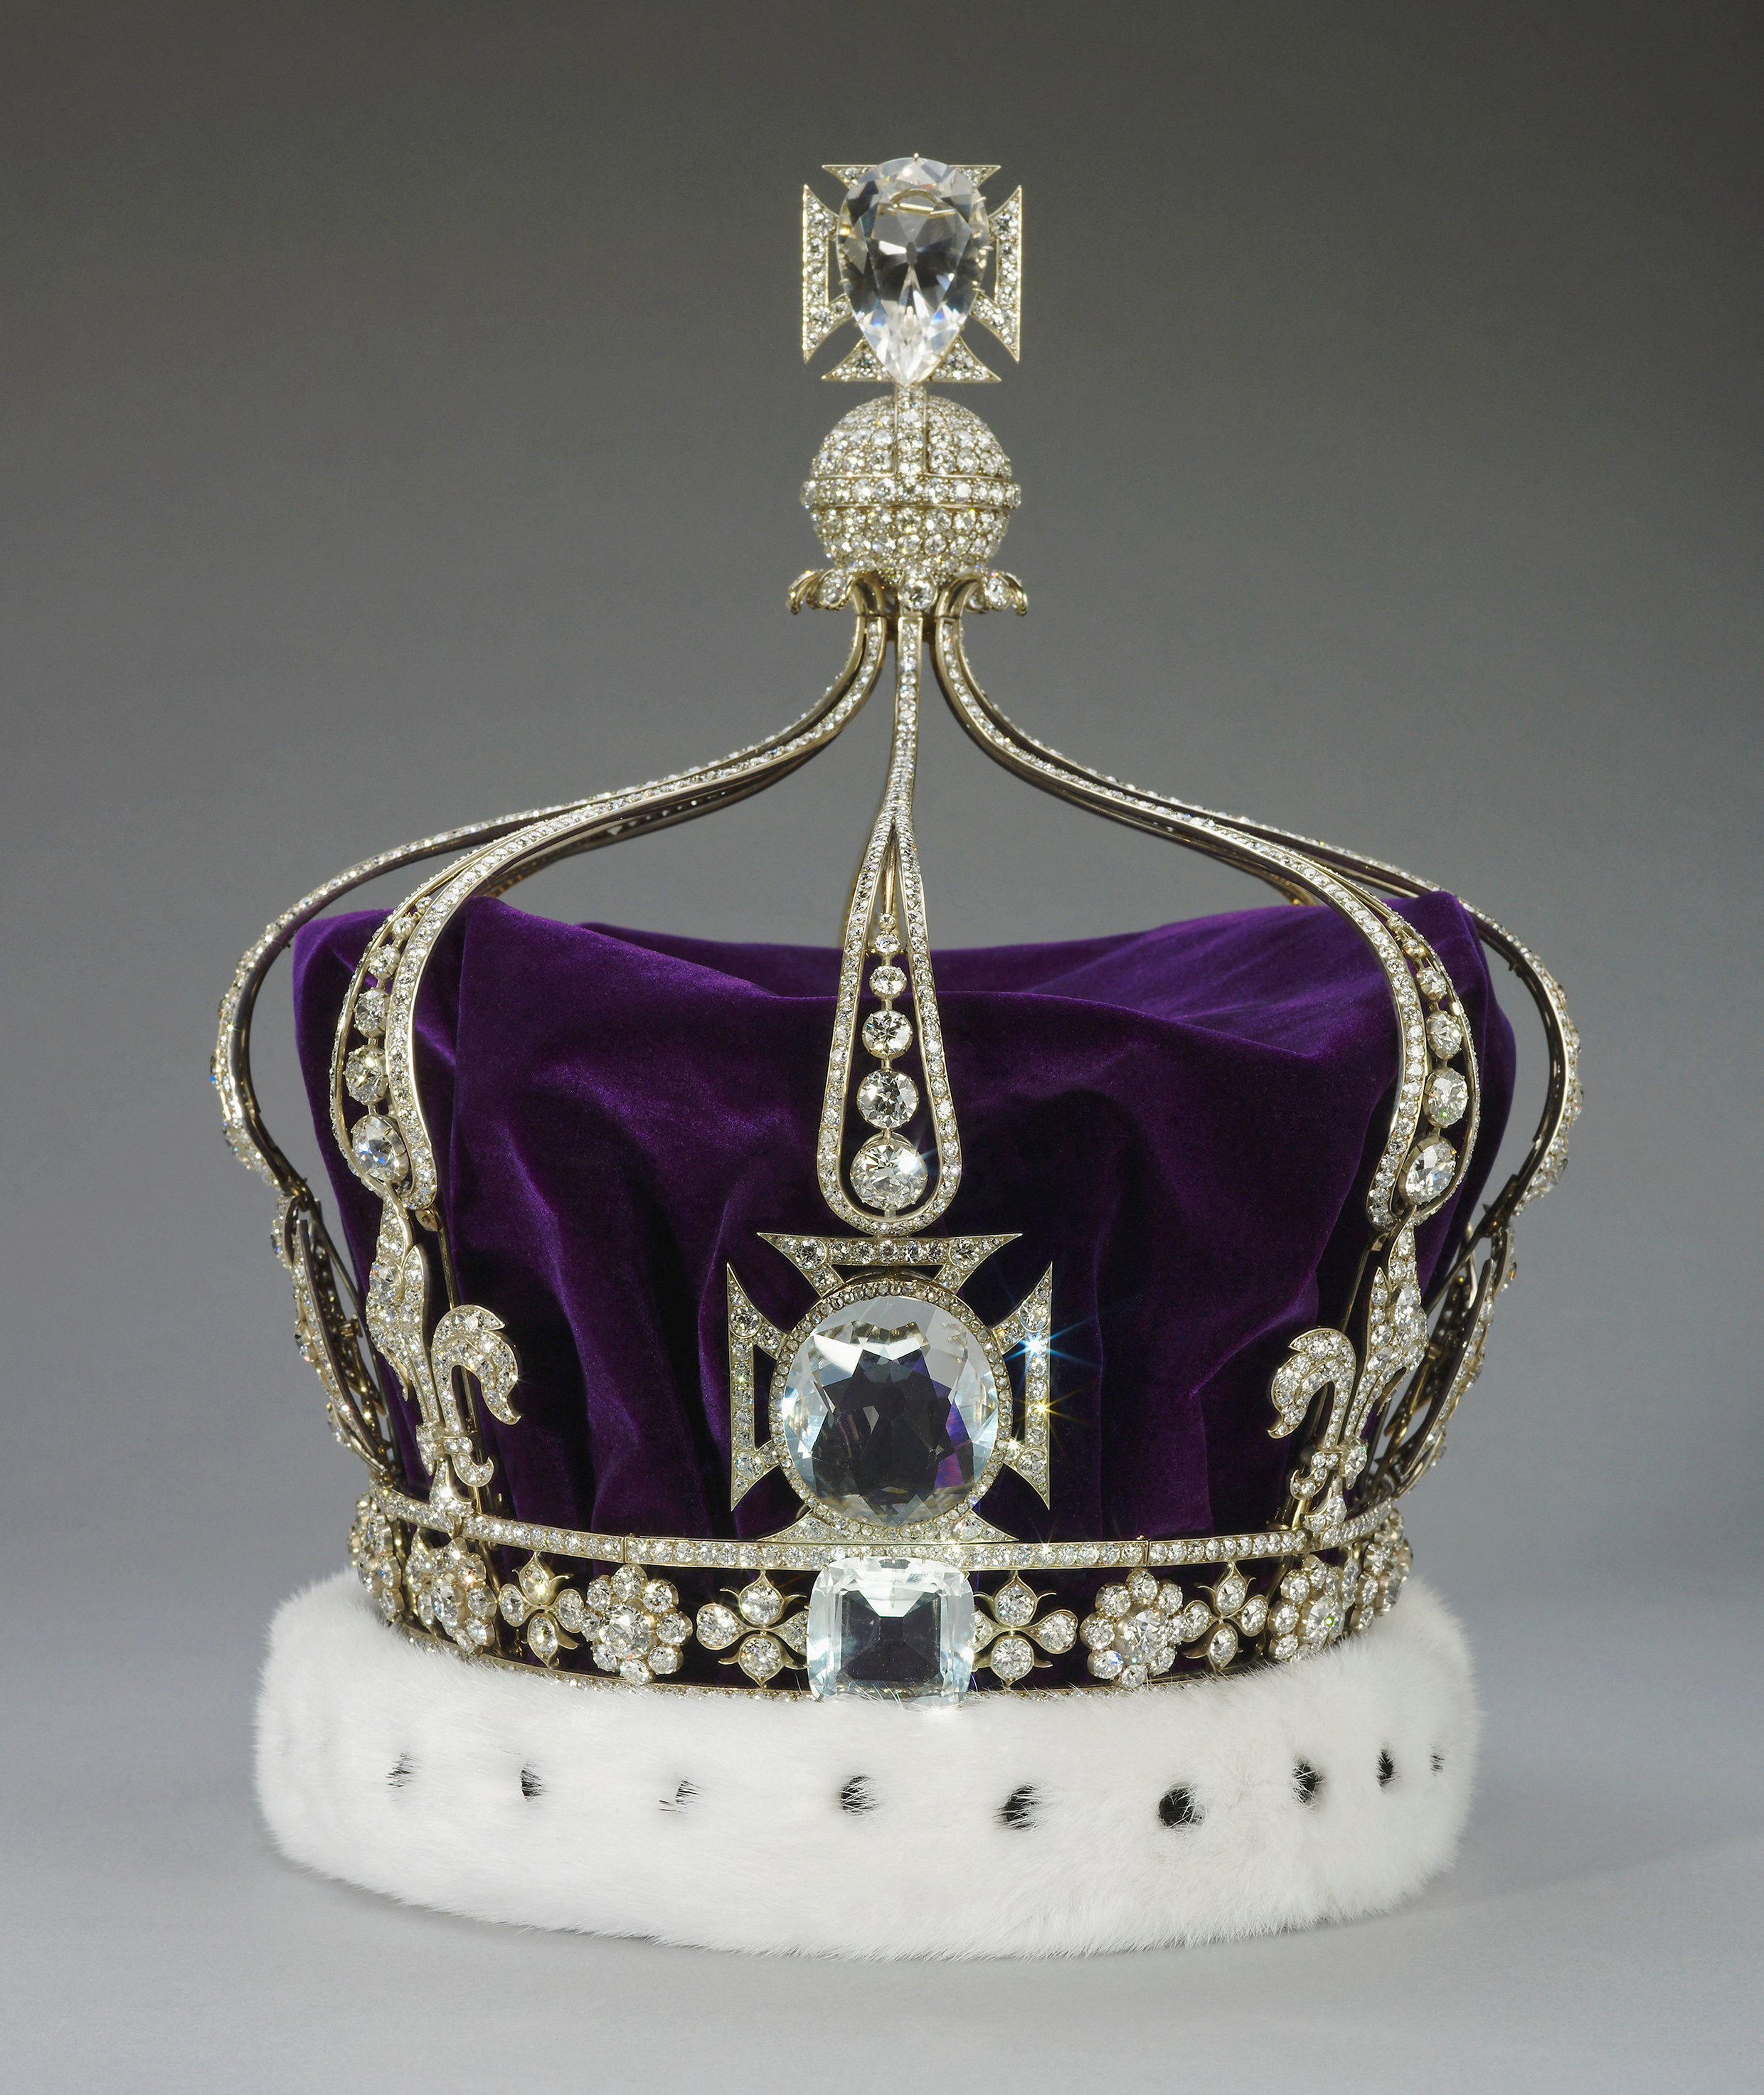 Imagen sin fecha de la Corona de la Reina María, que ha sido retirada de la Torre de Londres para ser modificada antes de la coronación del rey Carlos y la reina Camilla, en este folleto publicado el 14 de febrero de 2023 (REUTERS)